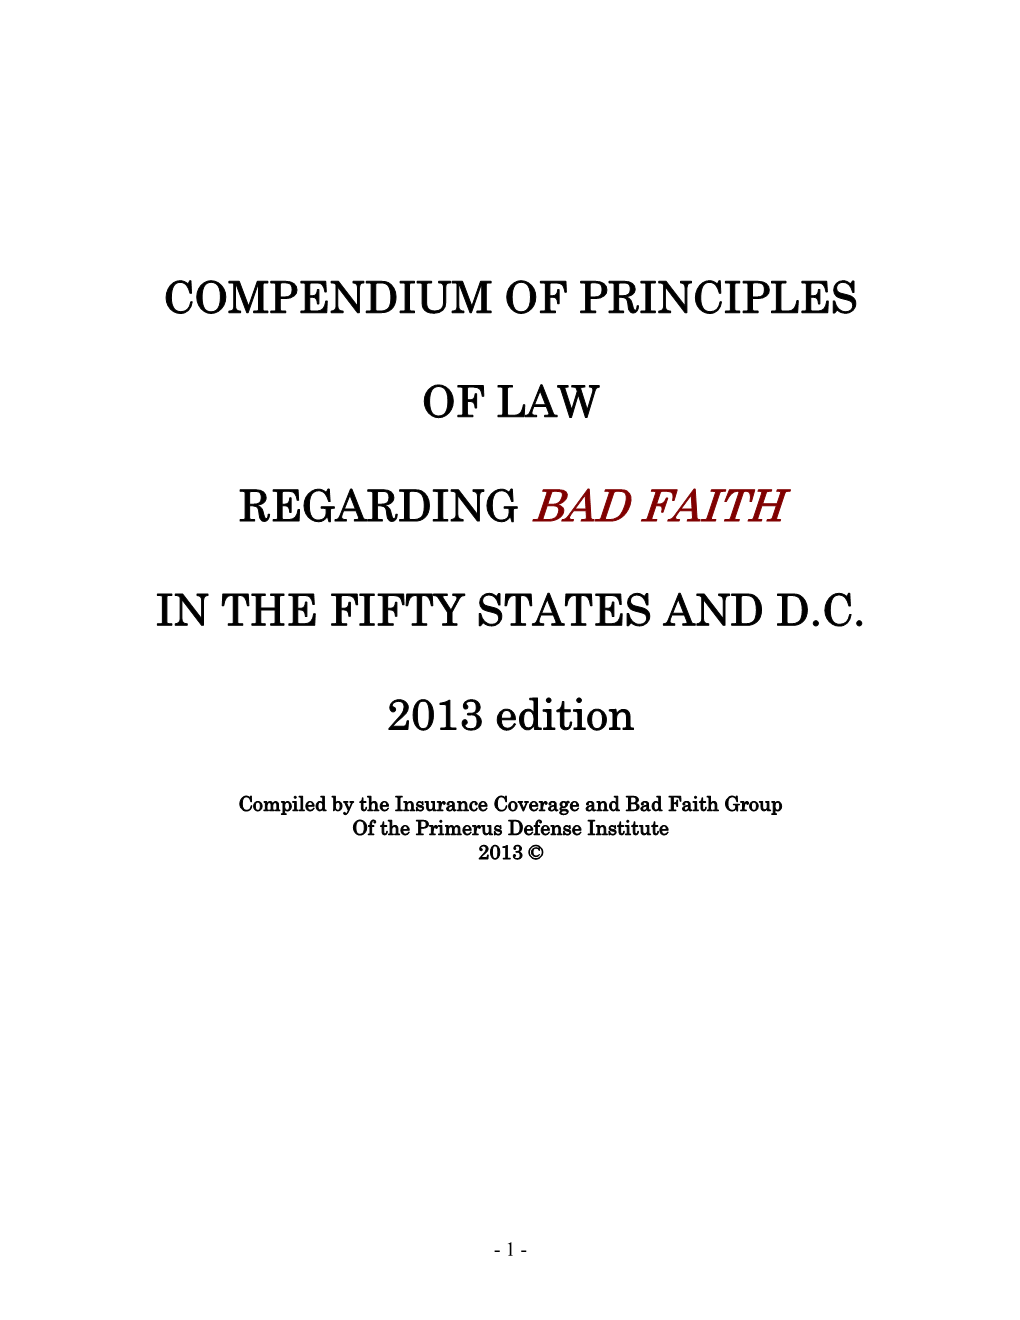 Compendium of Principles of Law Regarding Bad Faith In